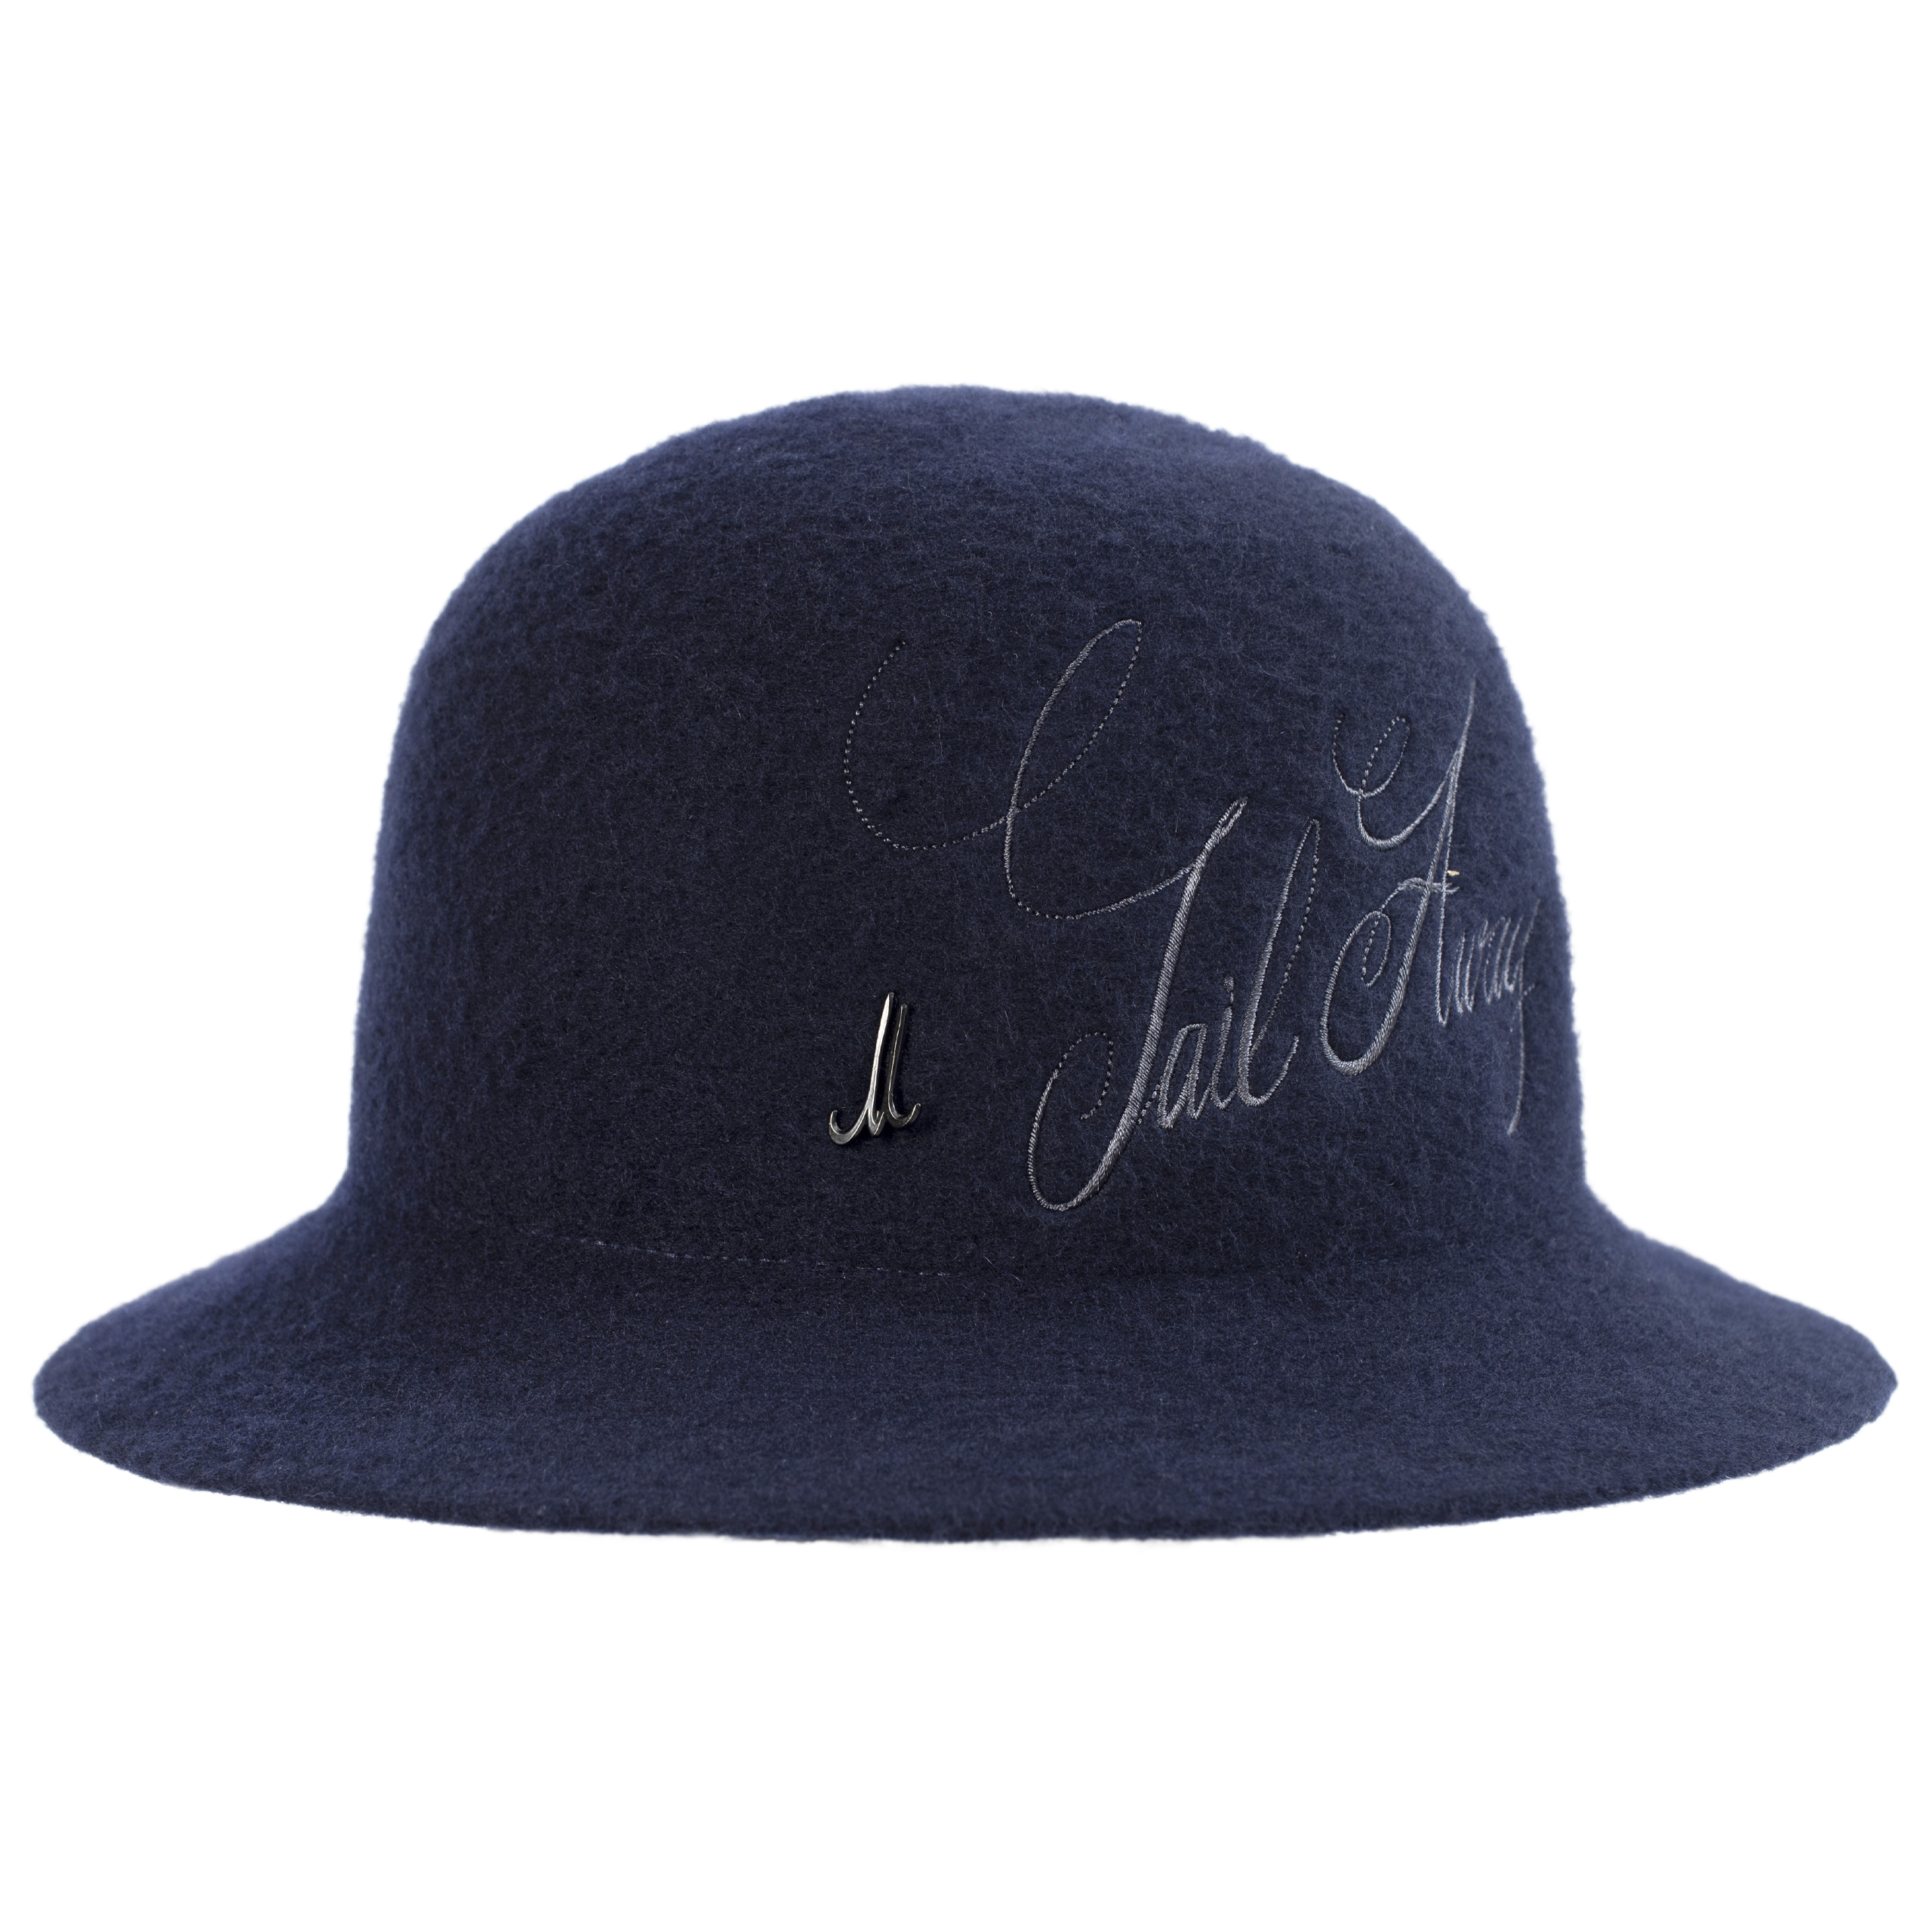 Шерстяная шляпа с вышитым логотипом Junya Watanabe WH-K606-051-2, размер 3 - фото 1